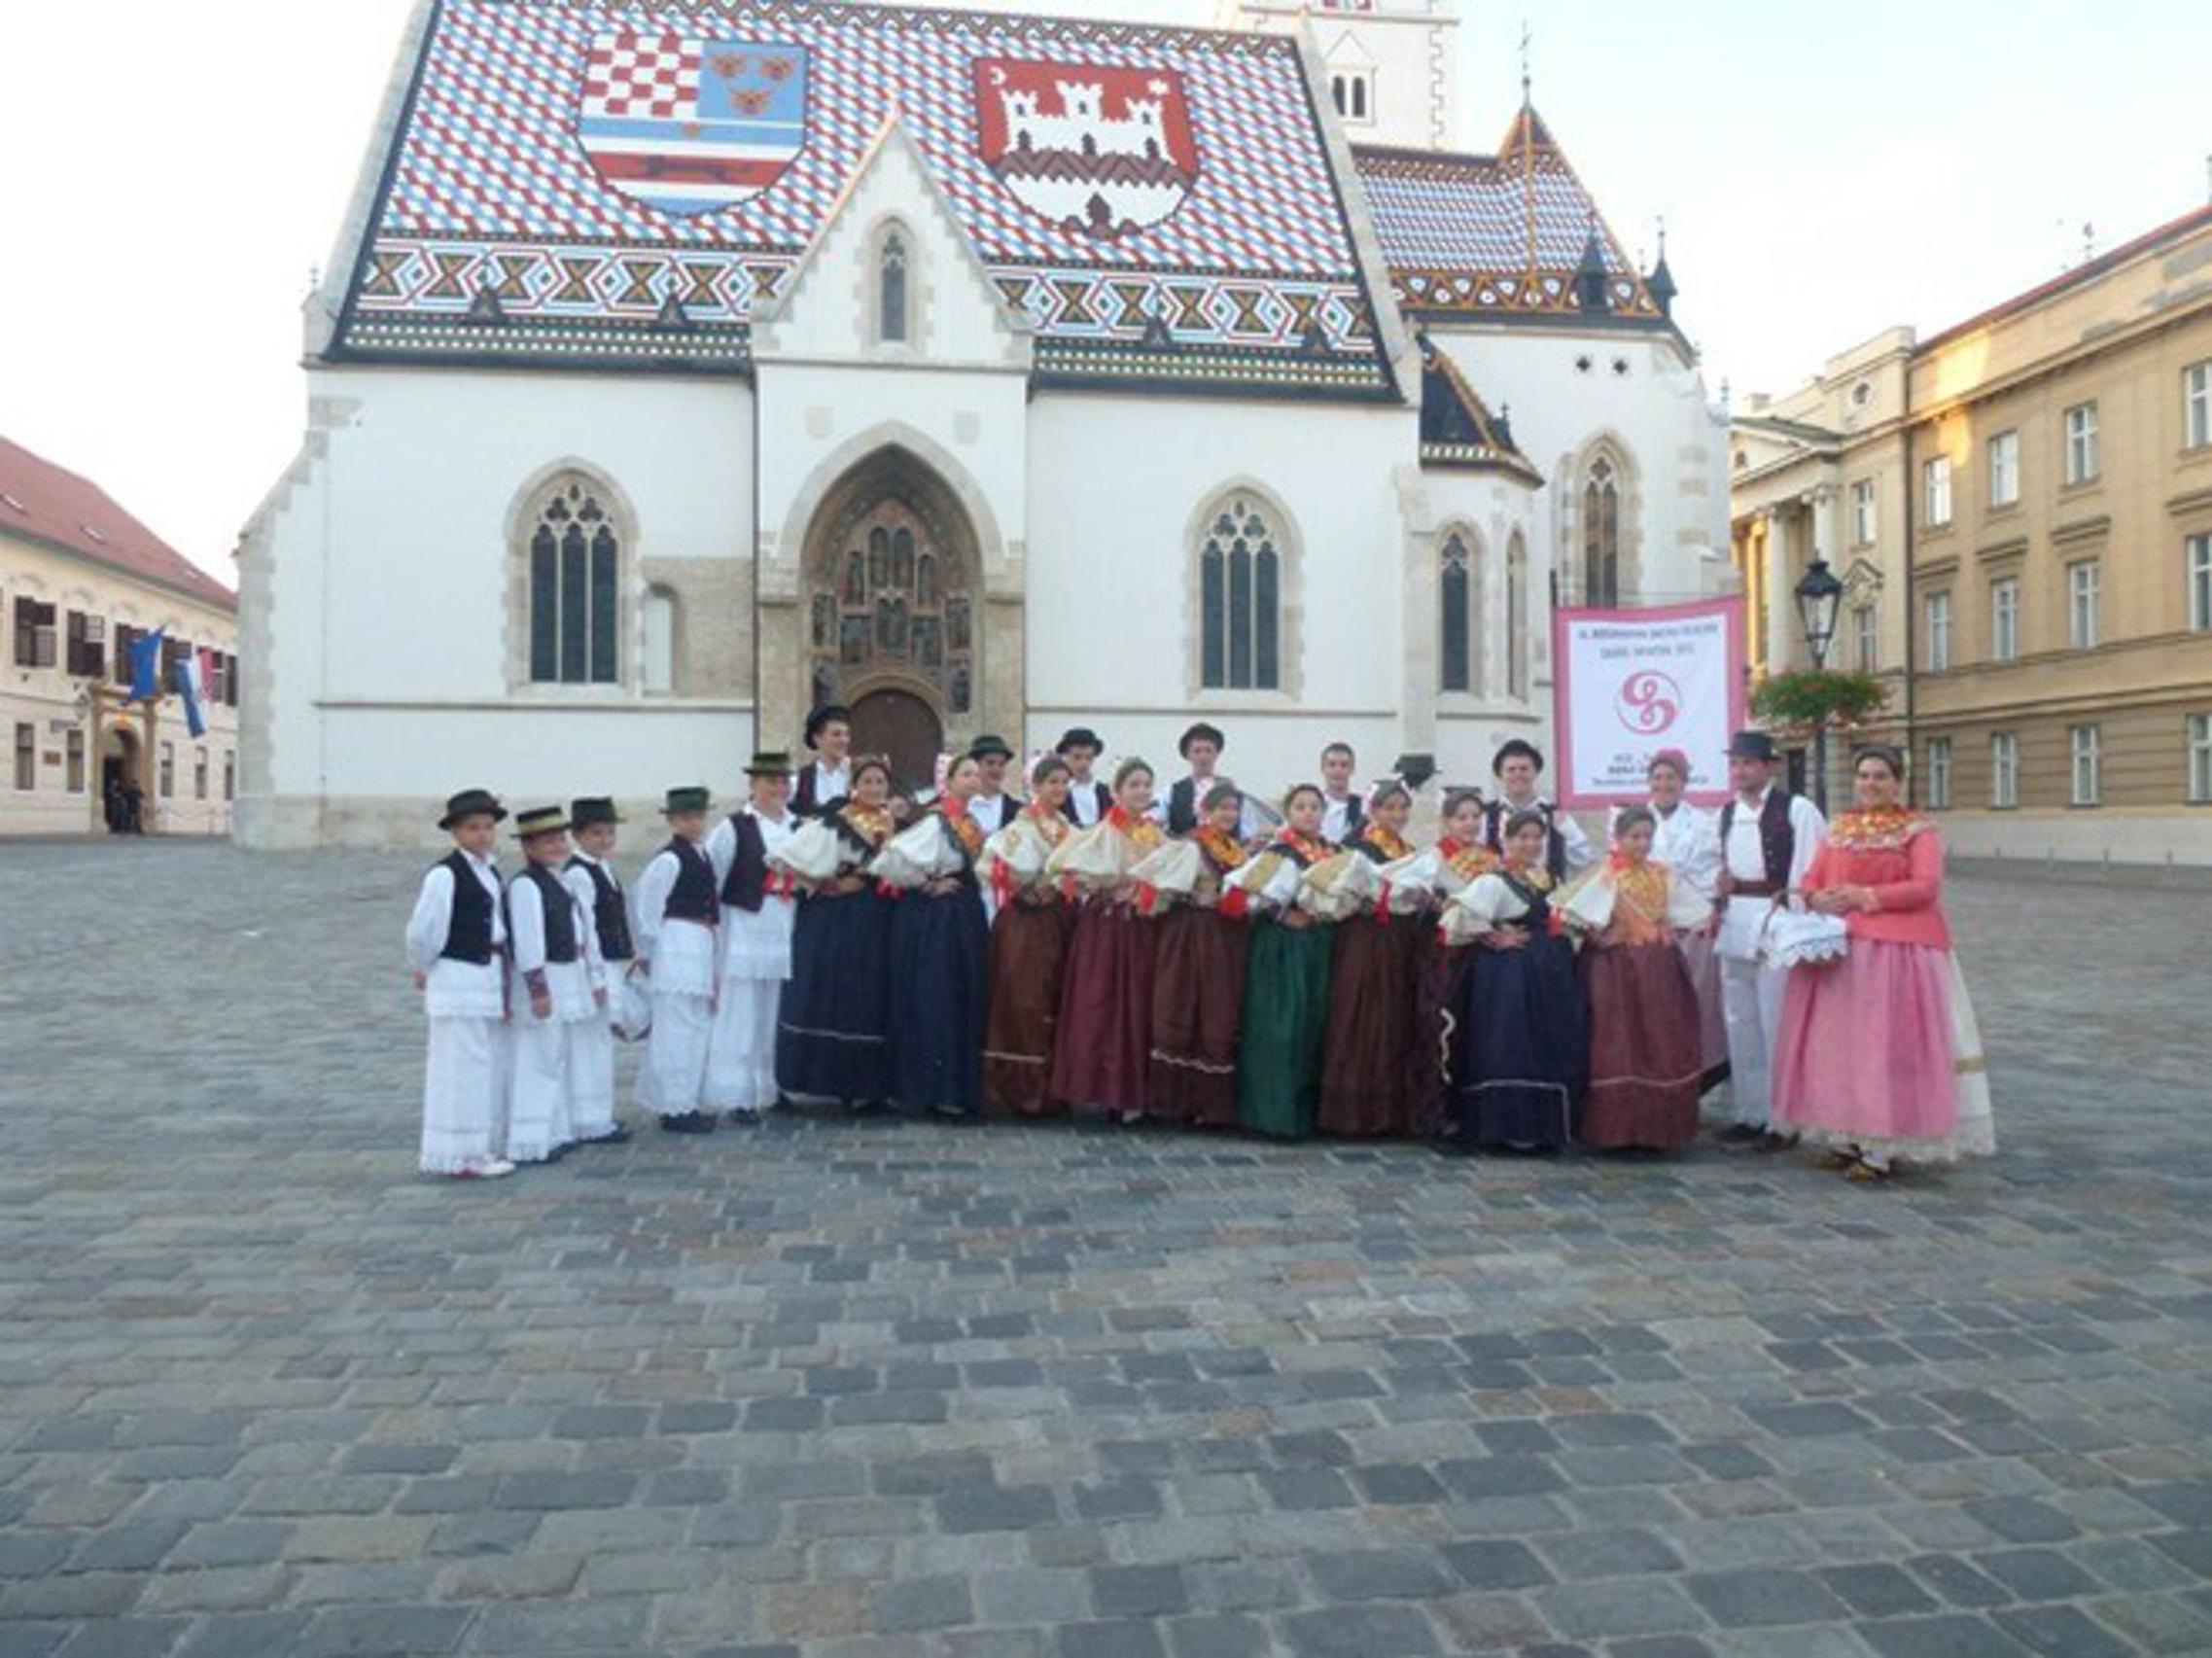 Nakon Markova trga u Zagrebu, slijedi nastup i na dubrovačkom Stardunu.